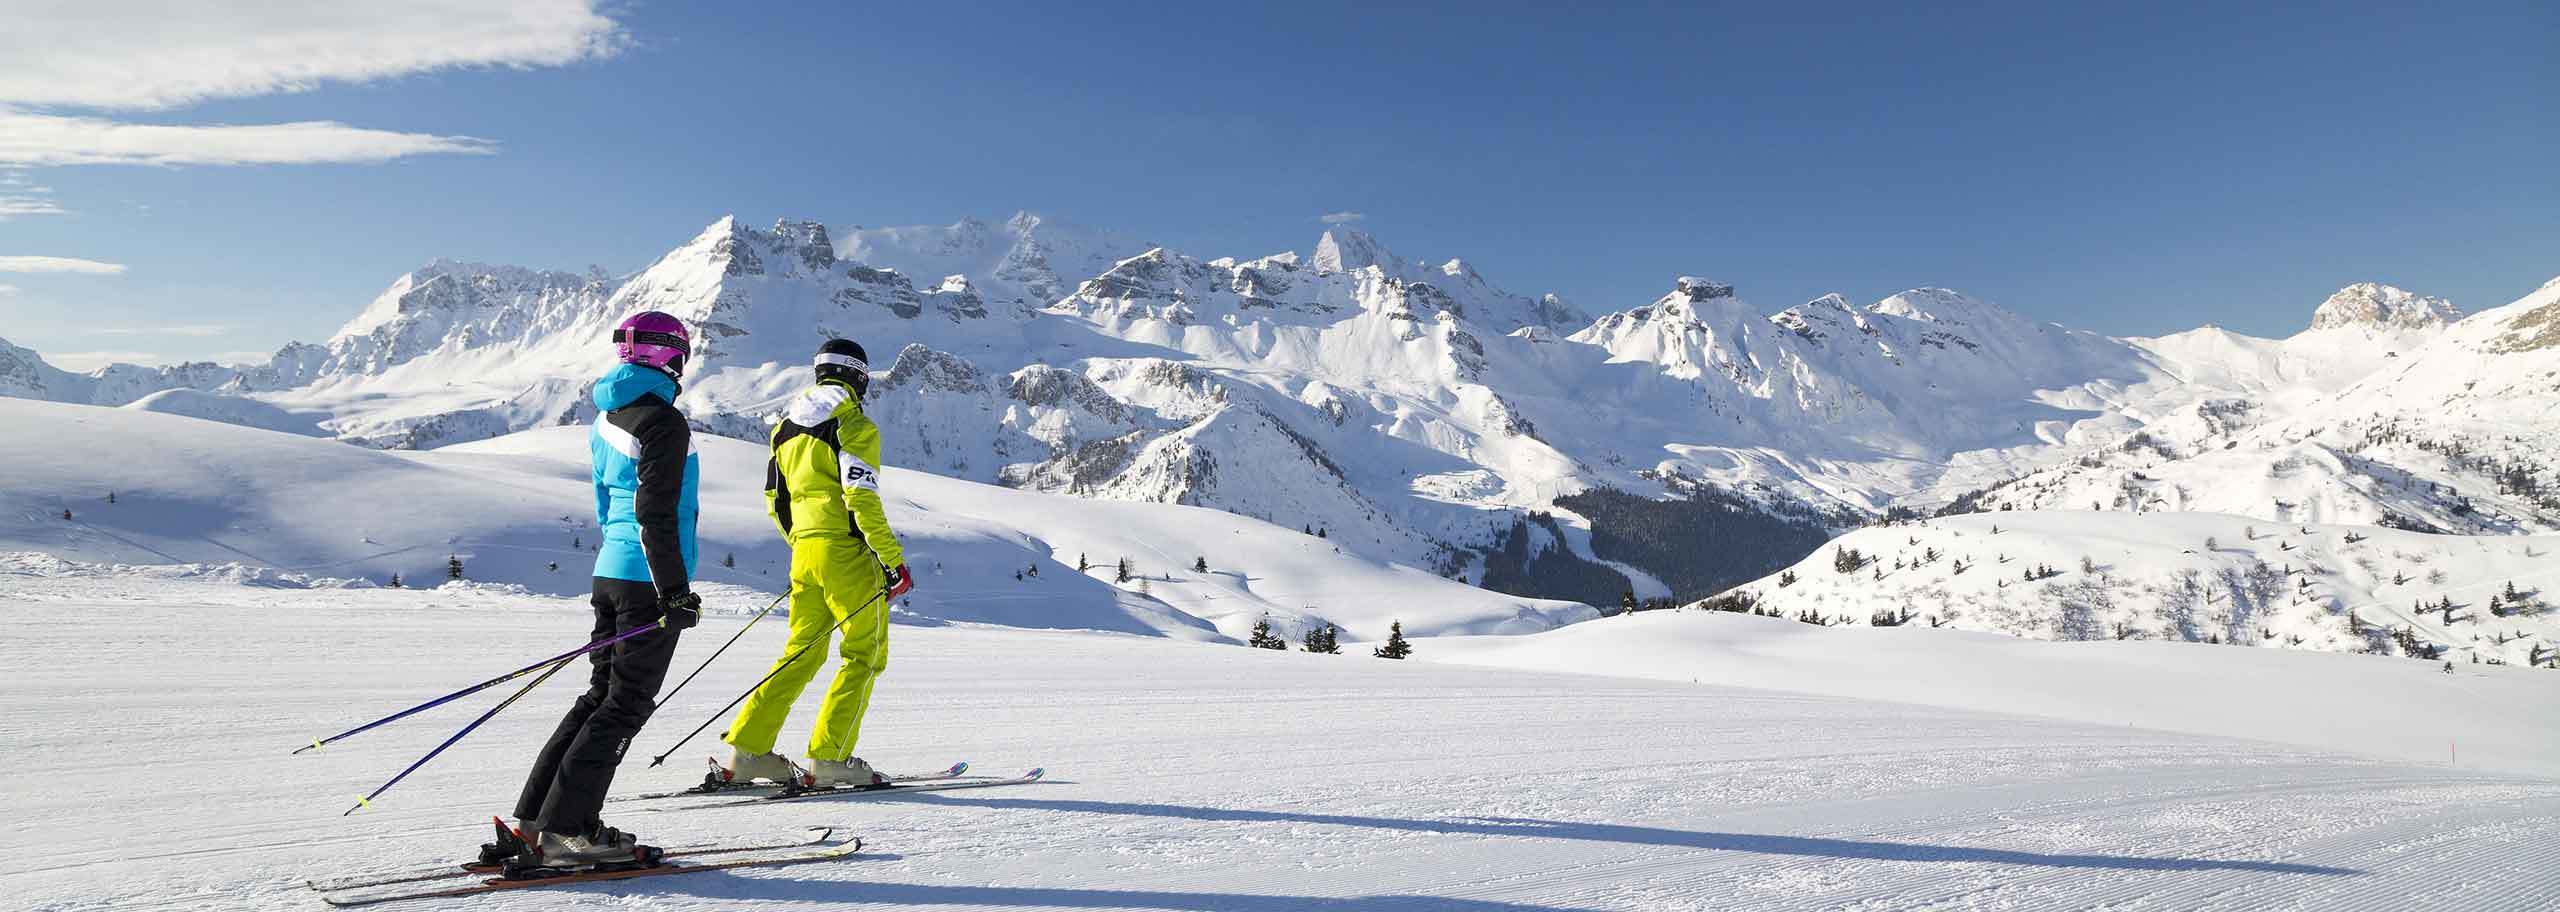 Ski Safari in Alta Badia, Giro Sciistico in Dolomiti